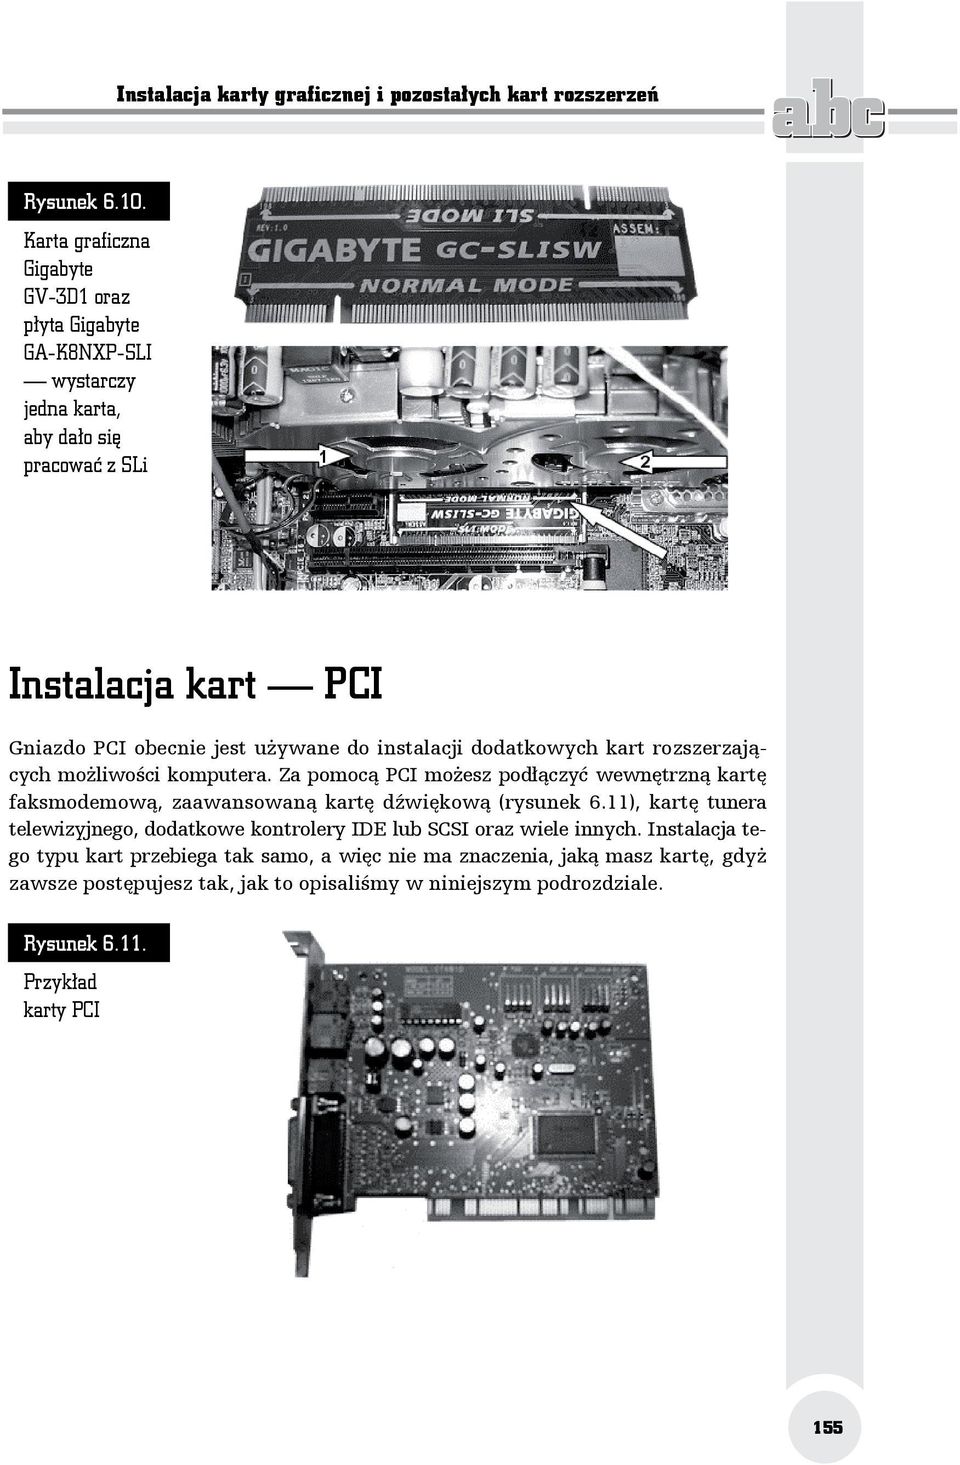 instalacji dodatkowych kart rozszerzających możliwości komputera. Za pomocą PCI możesz podłączyć wewnętrzną kartę faksmodemową, zaawansowaną kartę dźwiękową (rysunek 6.